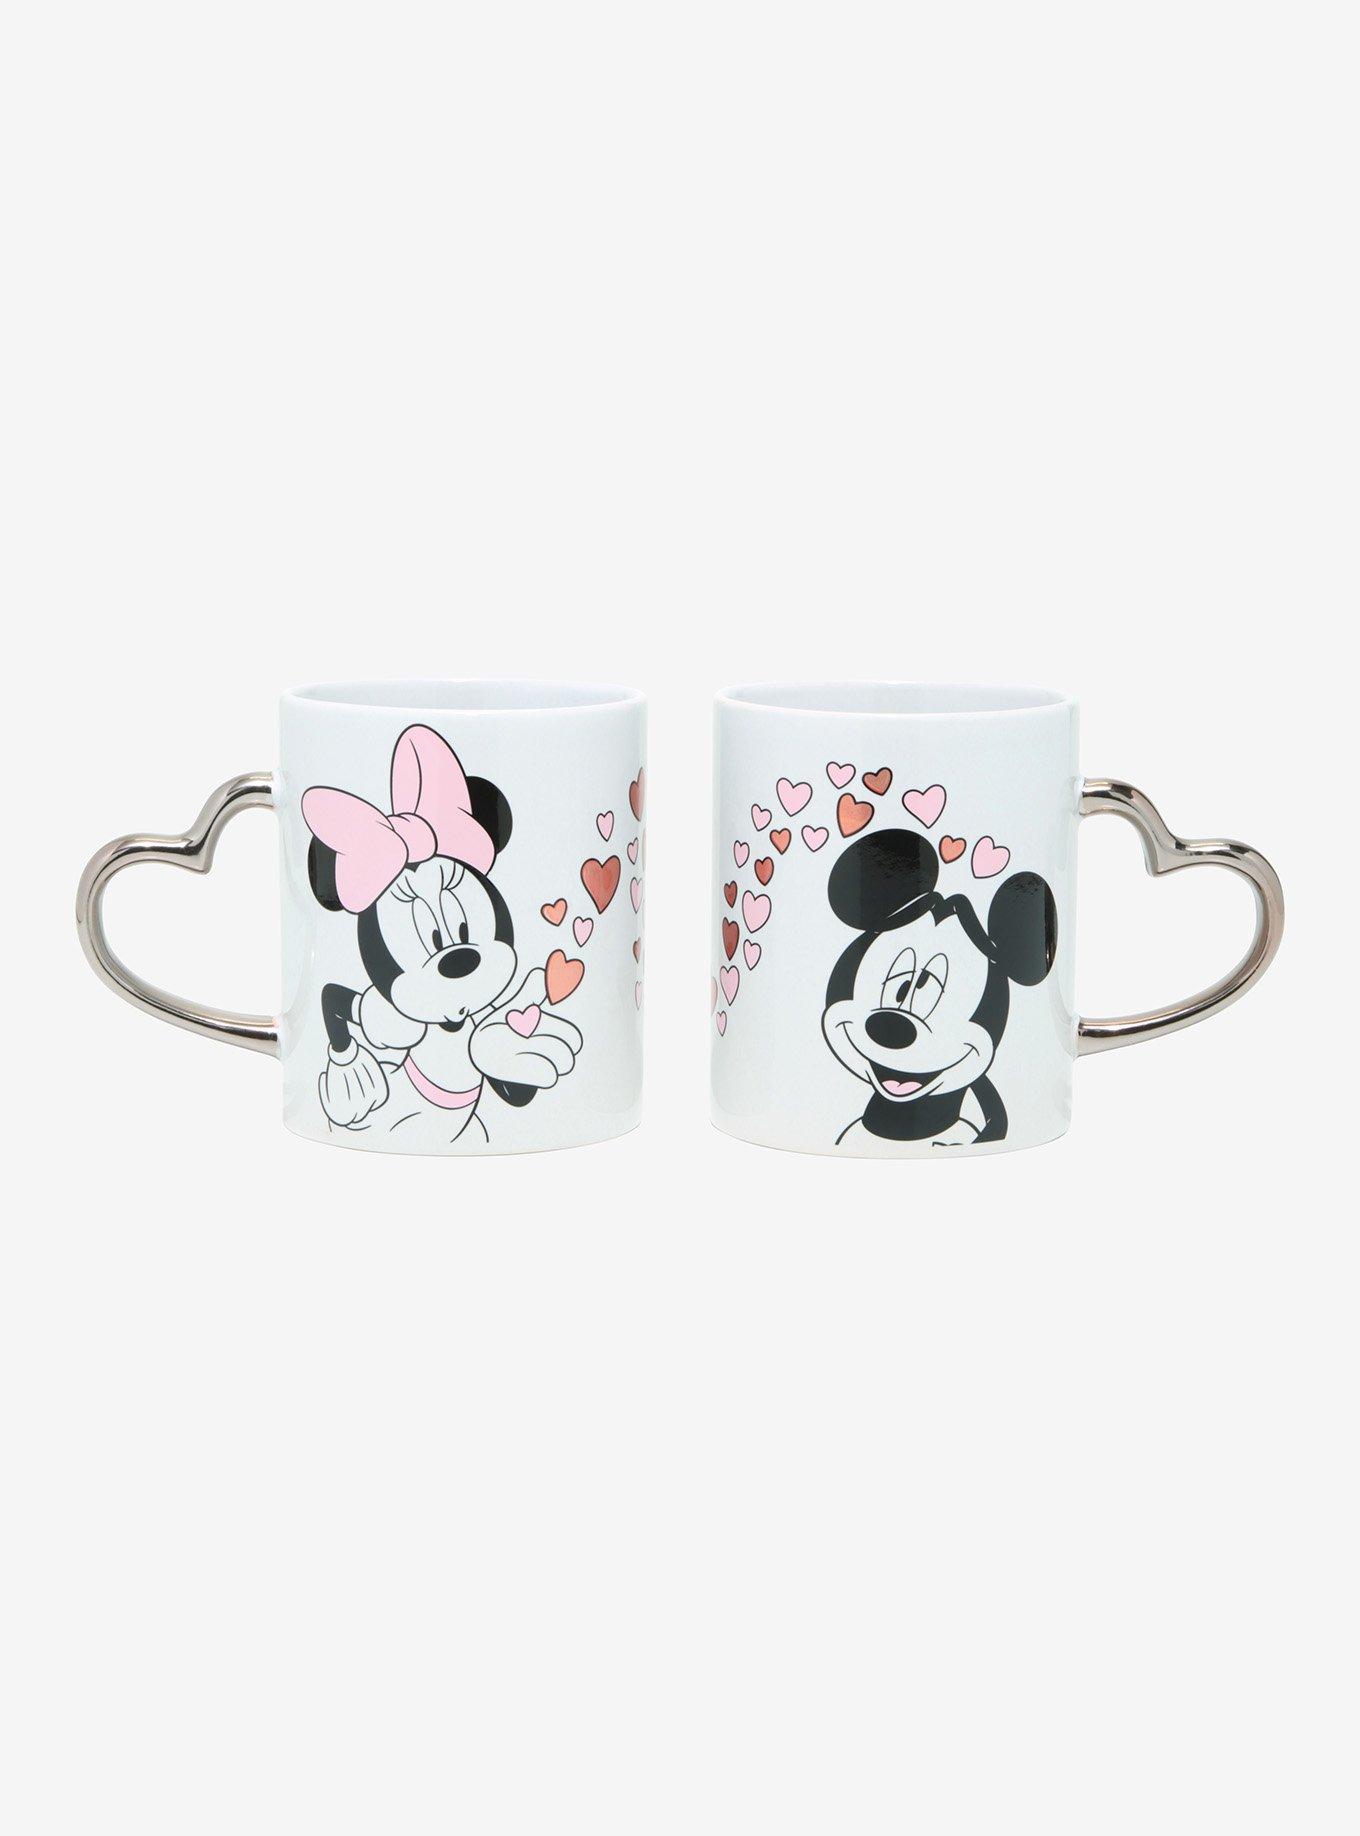 Mickey and Minnie Love Mug Couples Mug Set Wedding Mug Couples